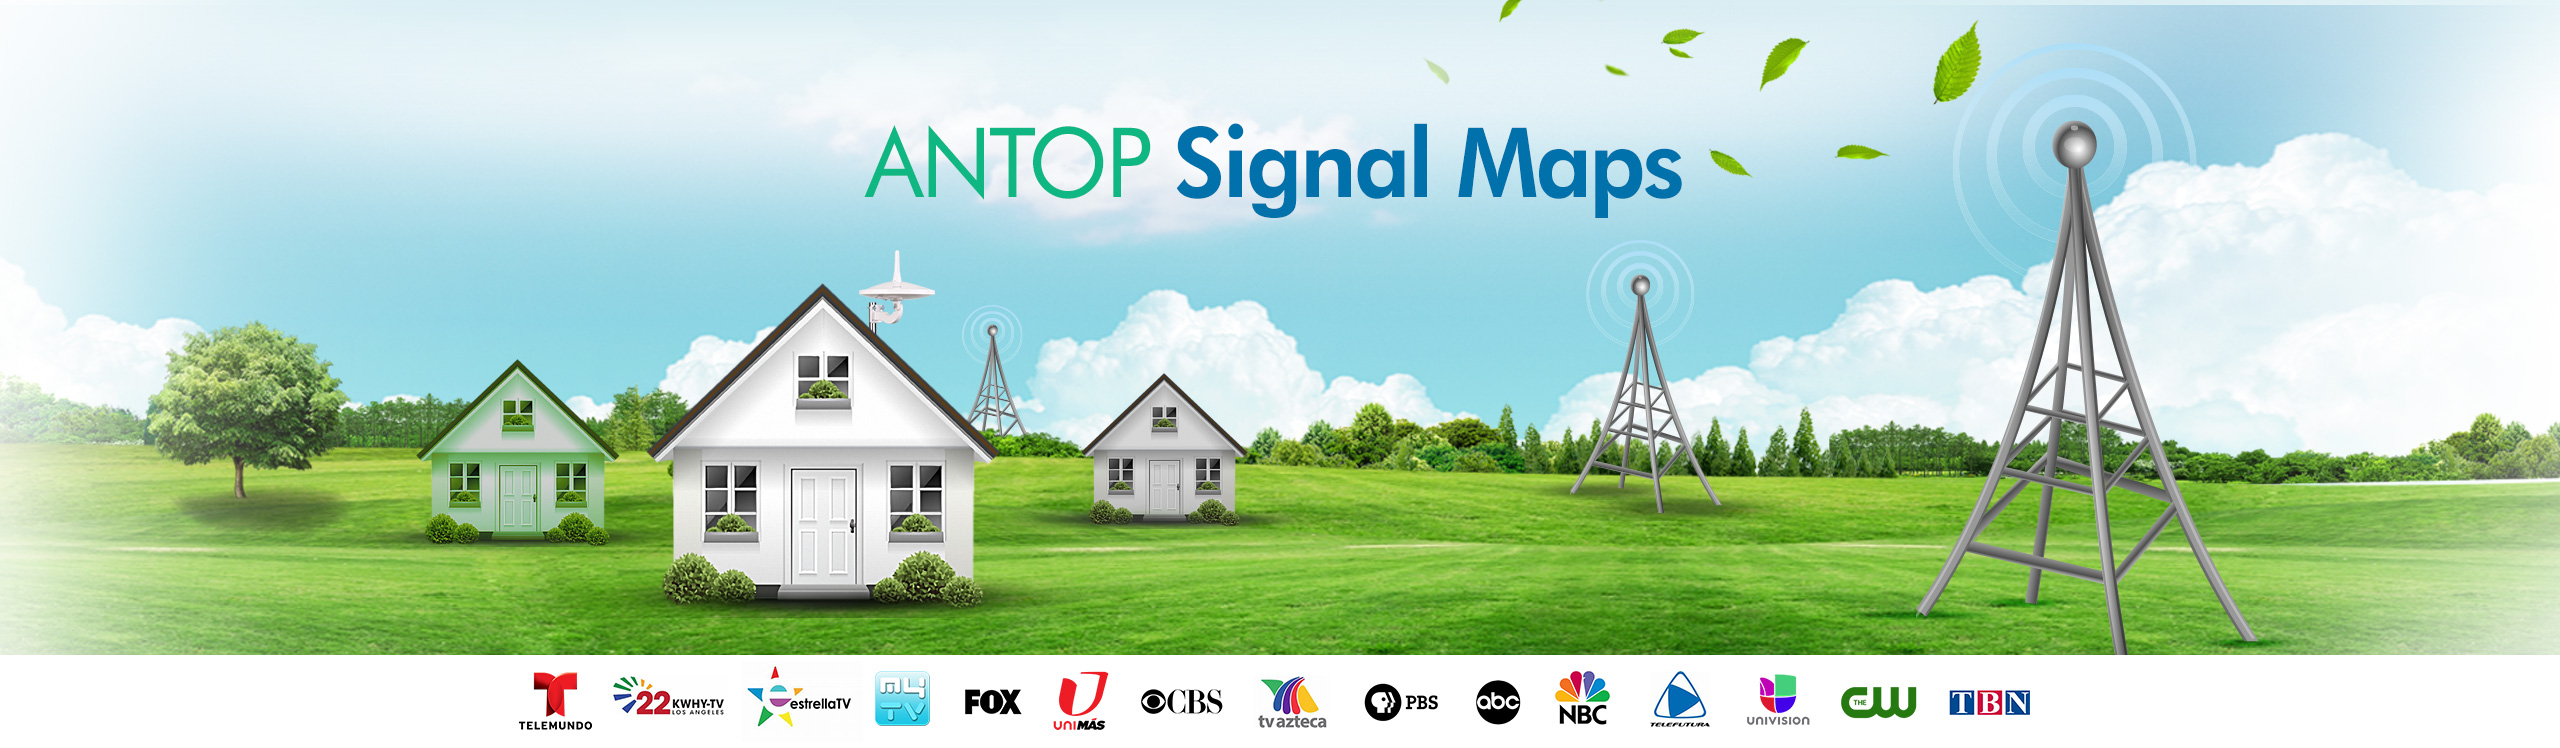 Antop Signal Maps